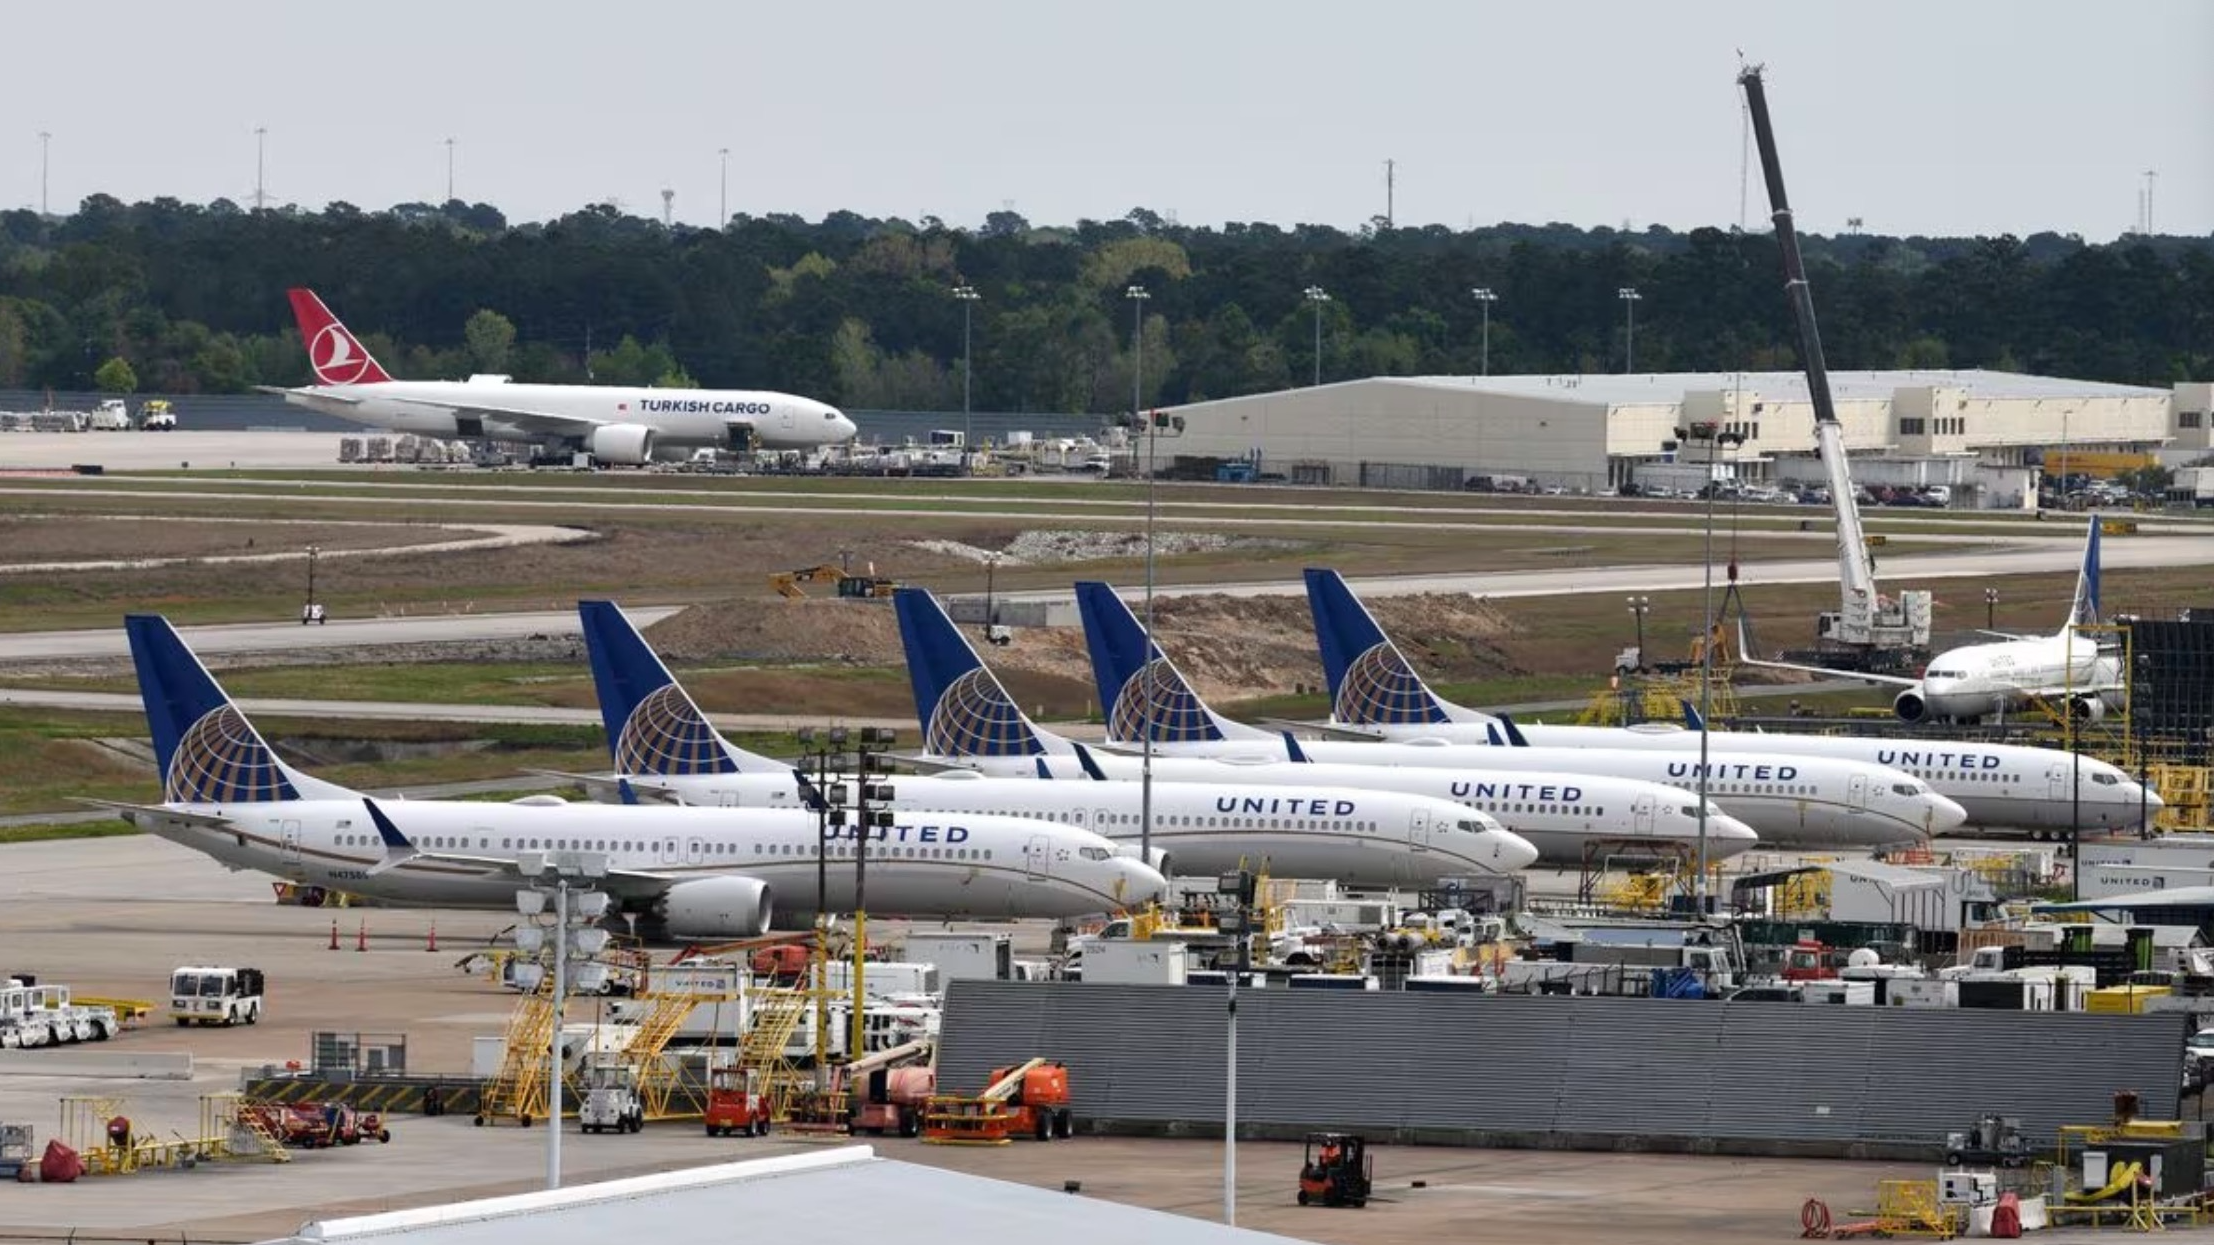 联合航空公司的飞机，包括一架波音 737 MAX 9 型号，在美国德克萨斯州休斯顿乔治布什洲际机场拍摄/路透社